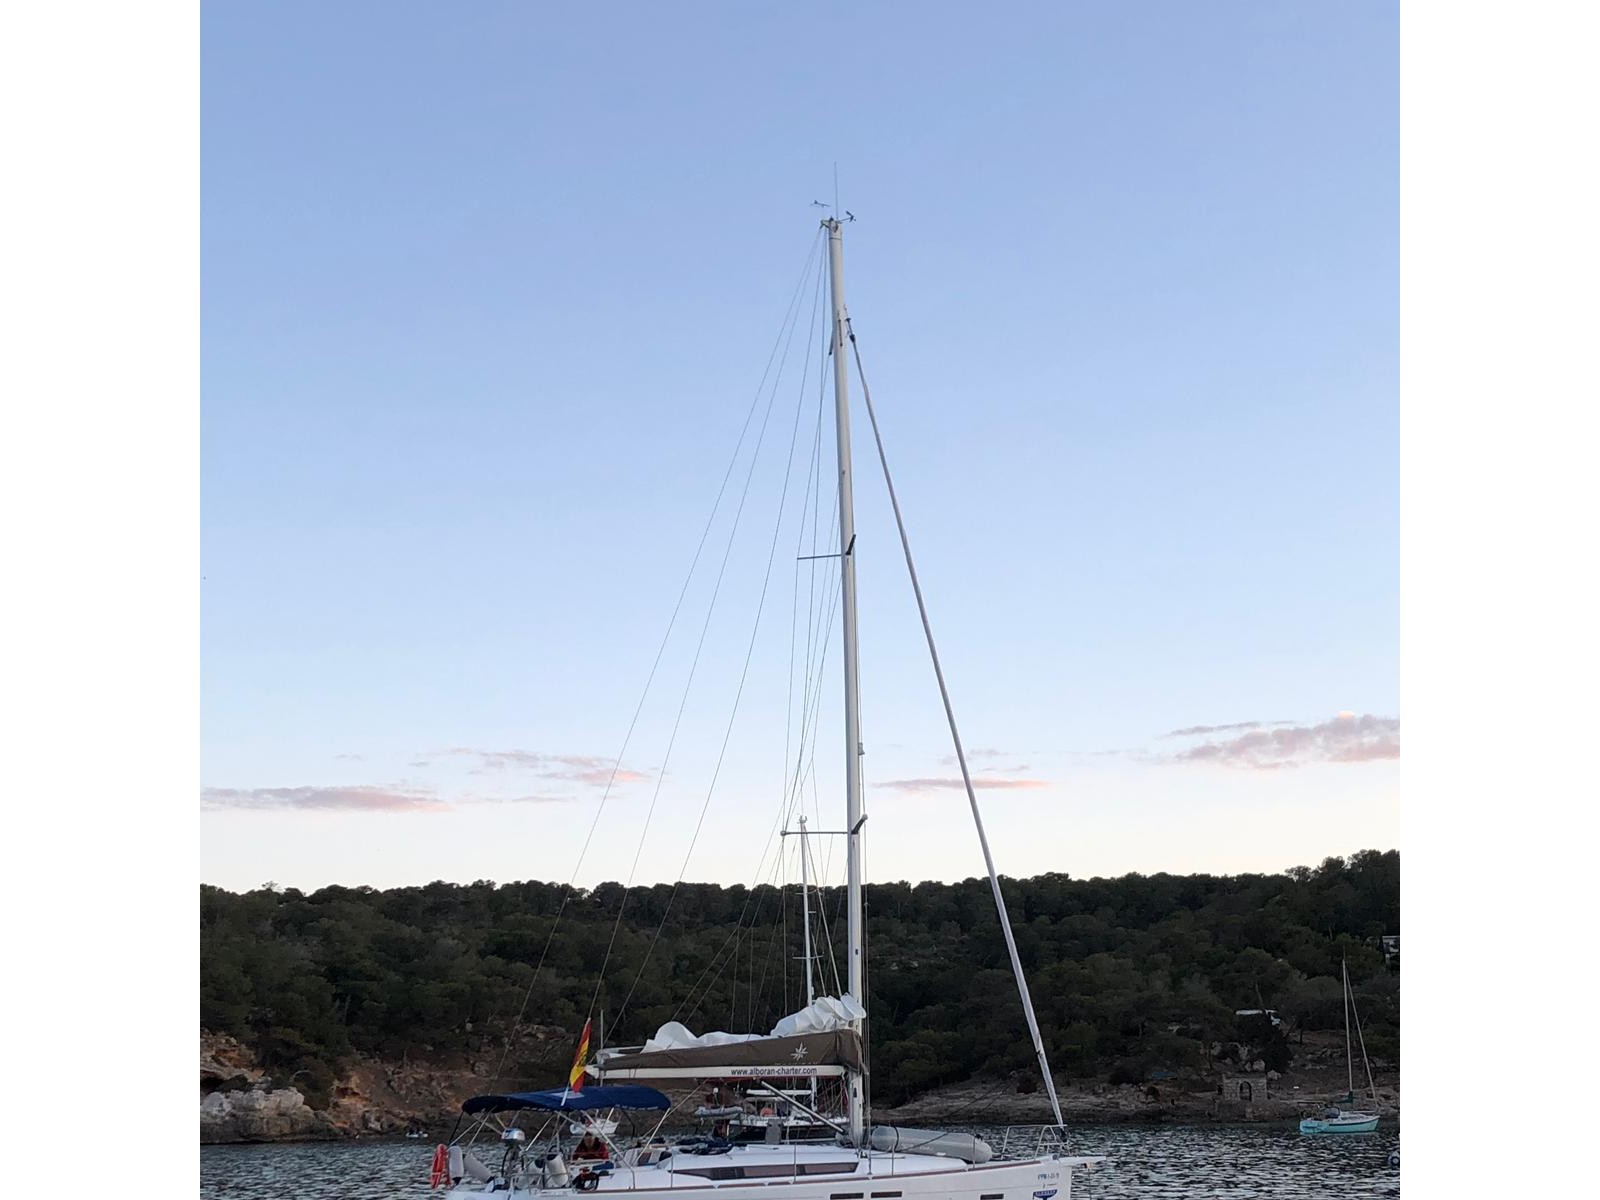 Sun Odyssey 419 - Sailboat Charter Balearics & Boat hire in Spain Balearic Islands Mallorca Palma De Mallorca Palma de Mallorca La Lonja Marina Charter 2